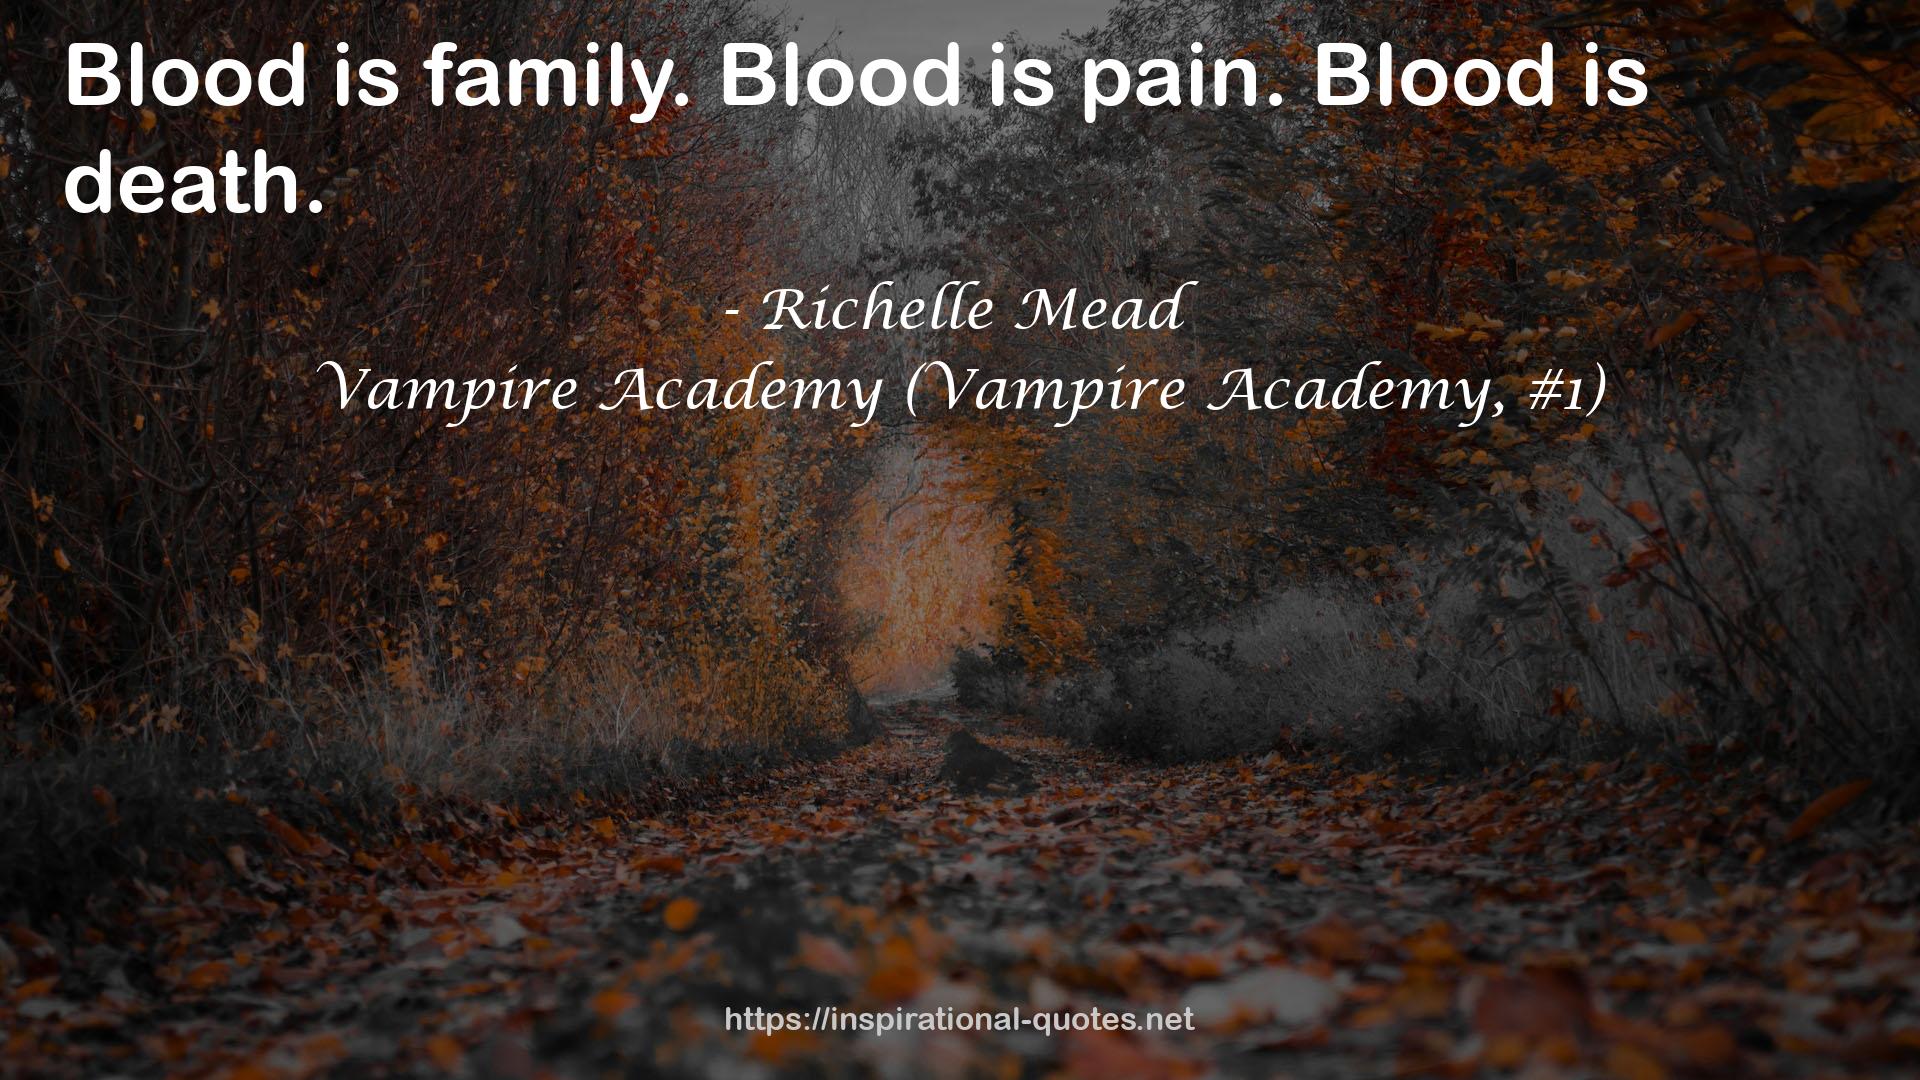 Vampire Academy (Vampire Academy, #1) QUOTES